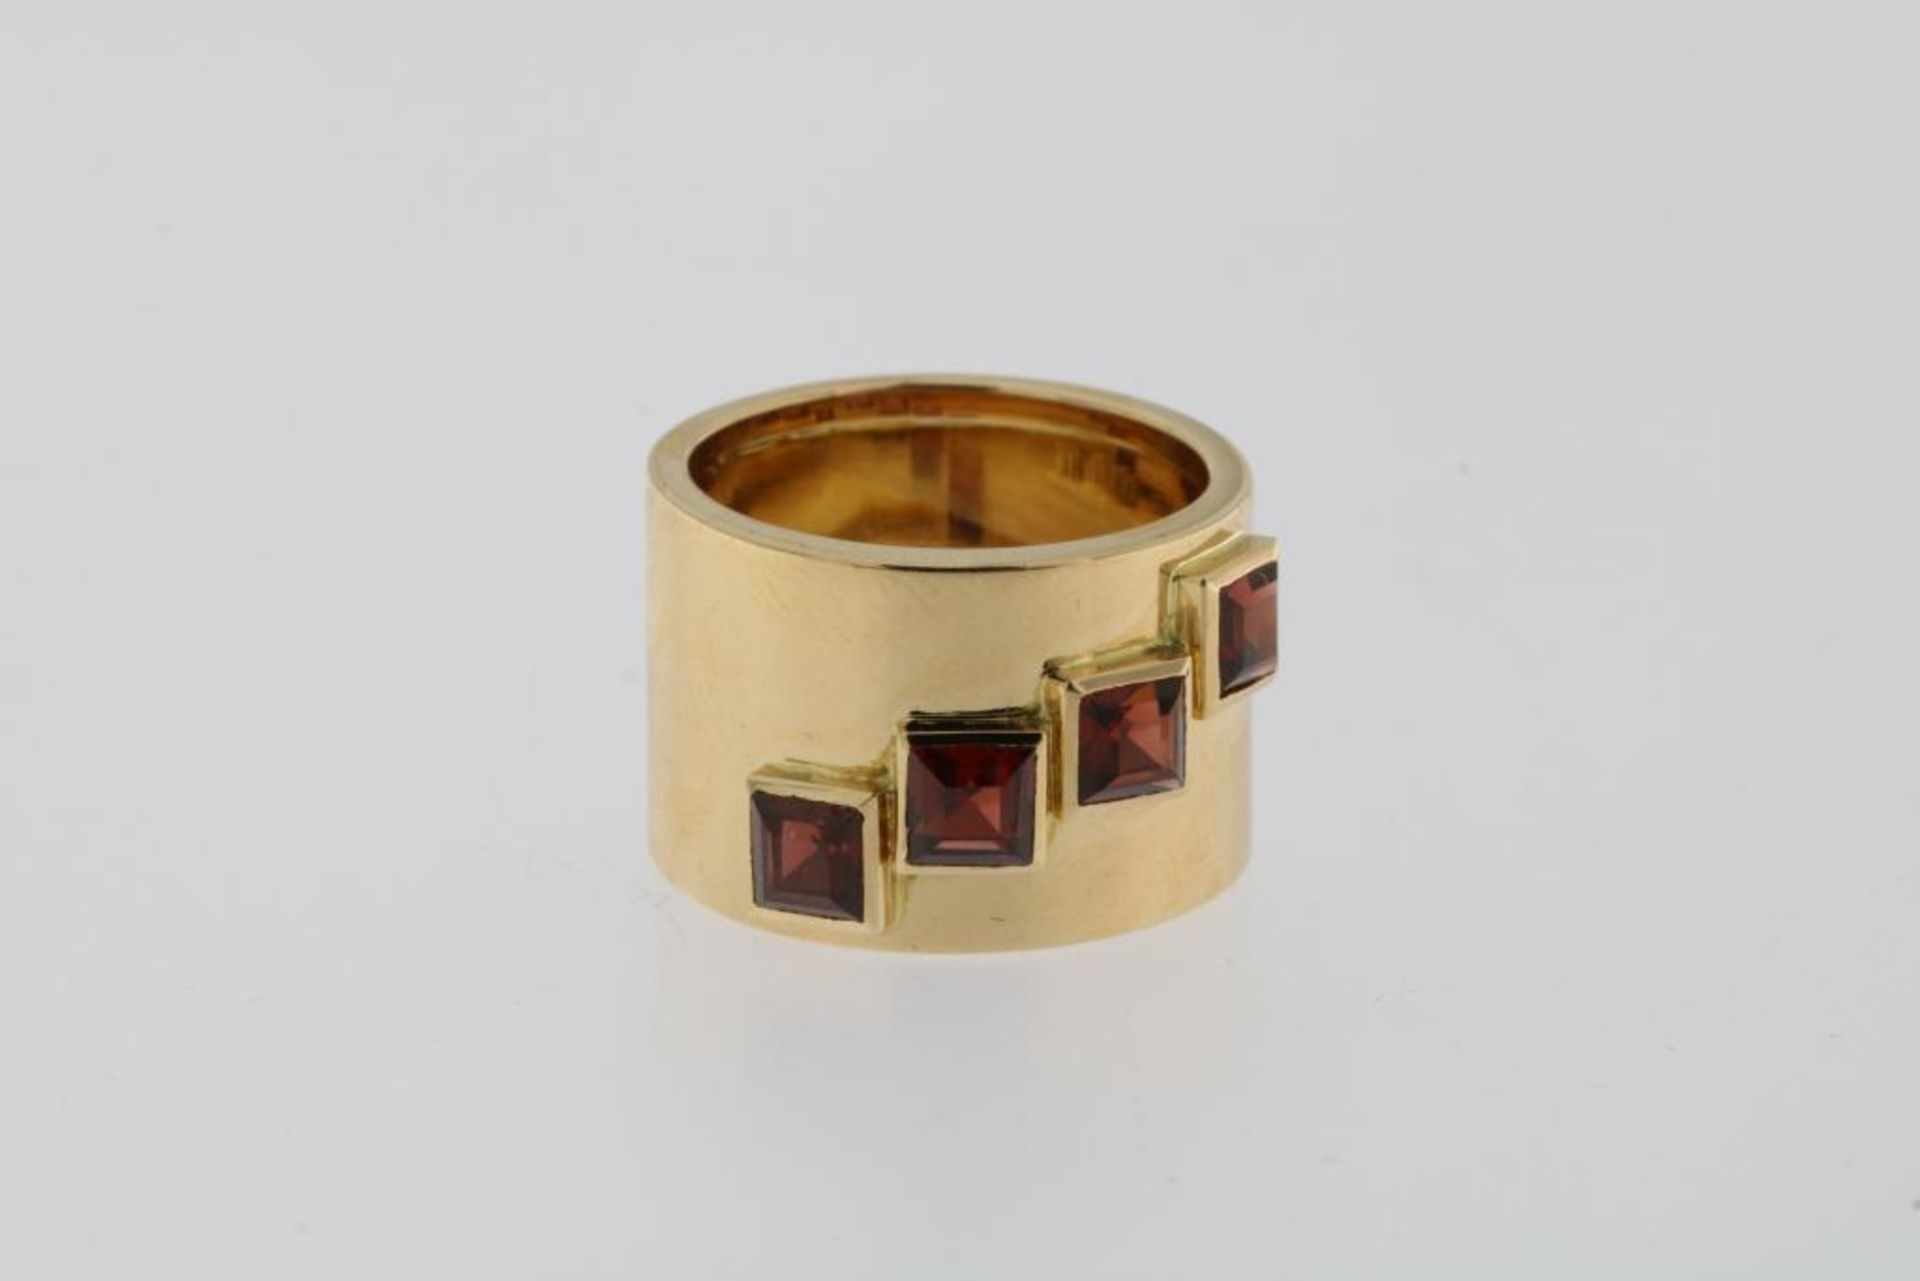 A rose gold ring set with four garnets, Binder, 585/000, gross w. 9.3gr, seize 16.5.Een roségouden